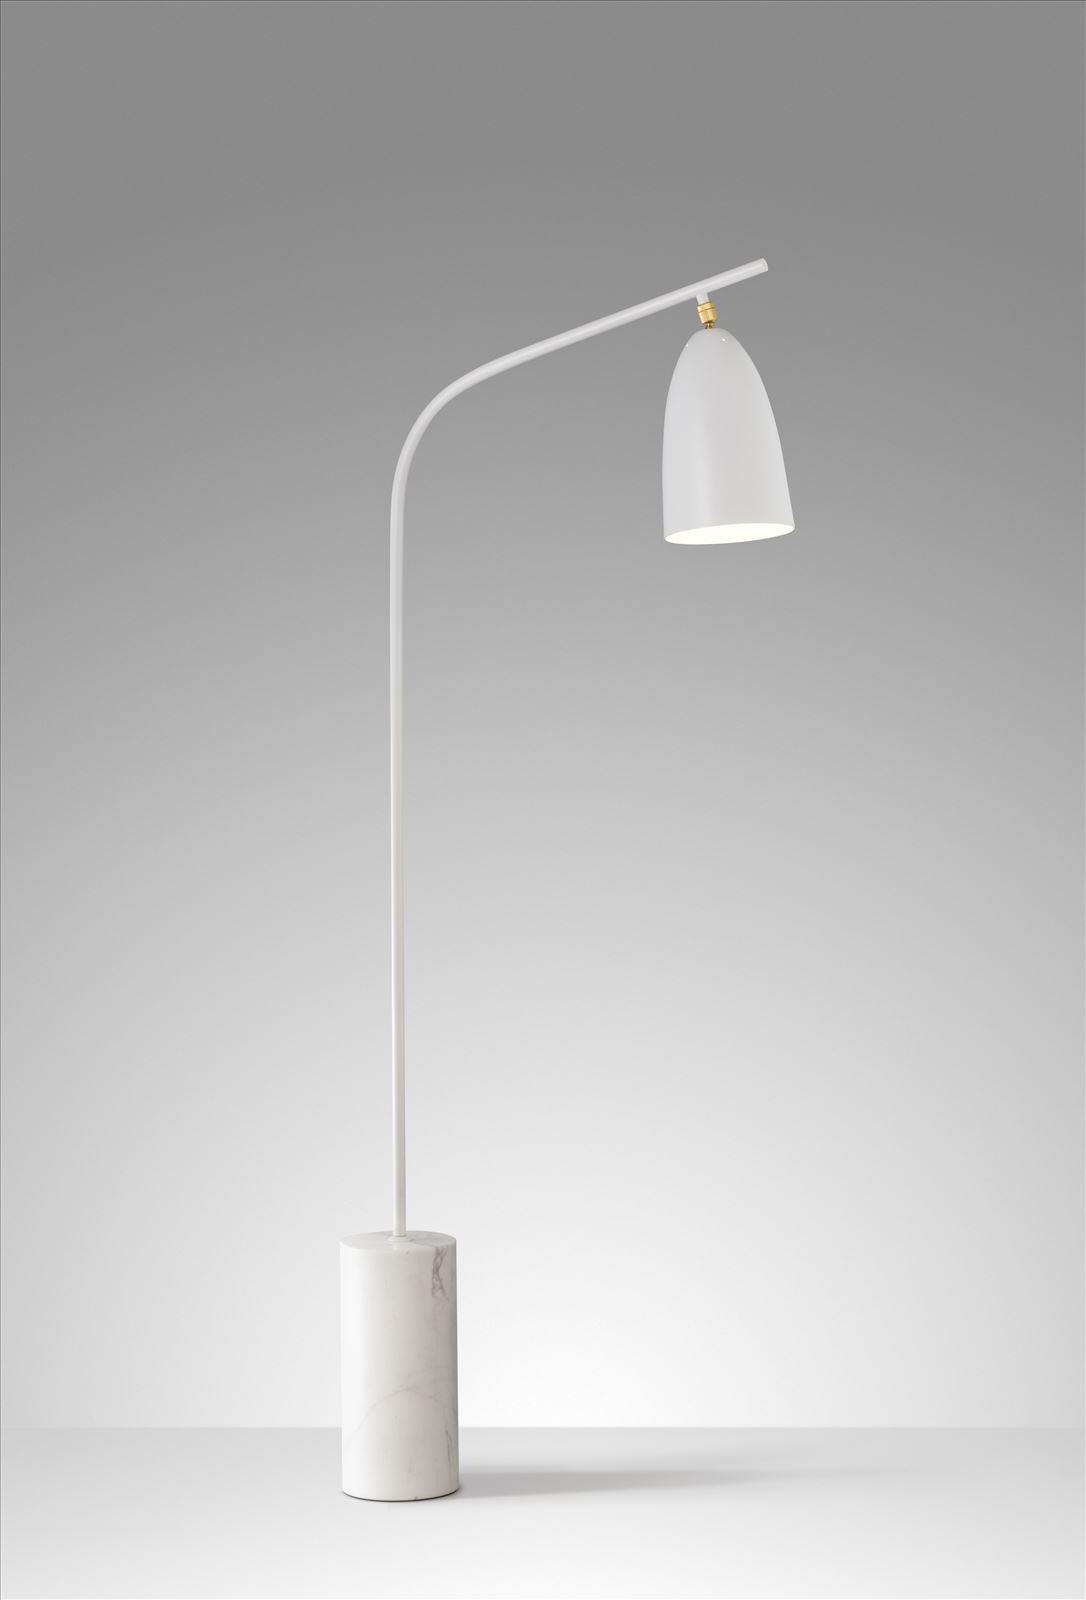 גופי תאורה מקטגוריית: מנורות עמידה  ,שם המוצר: GLAM